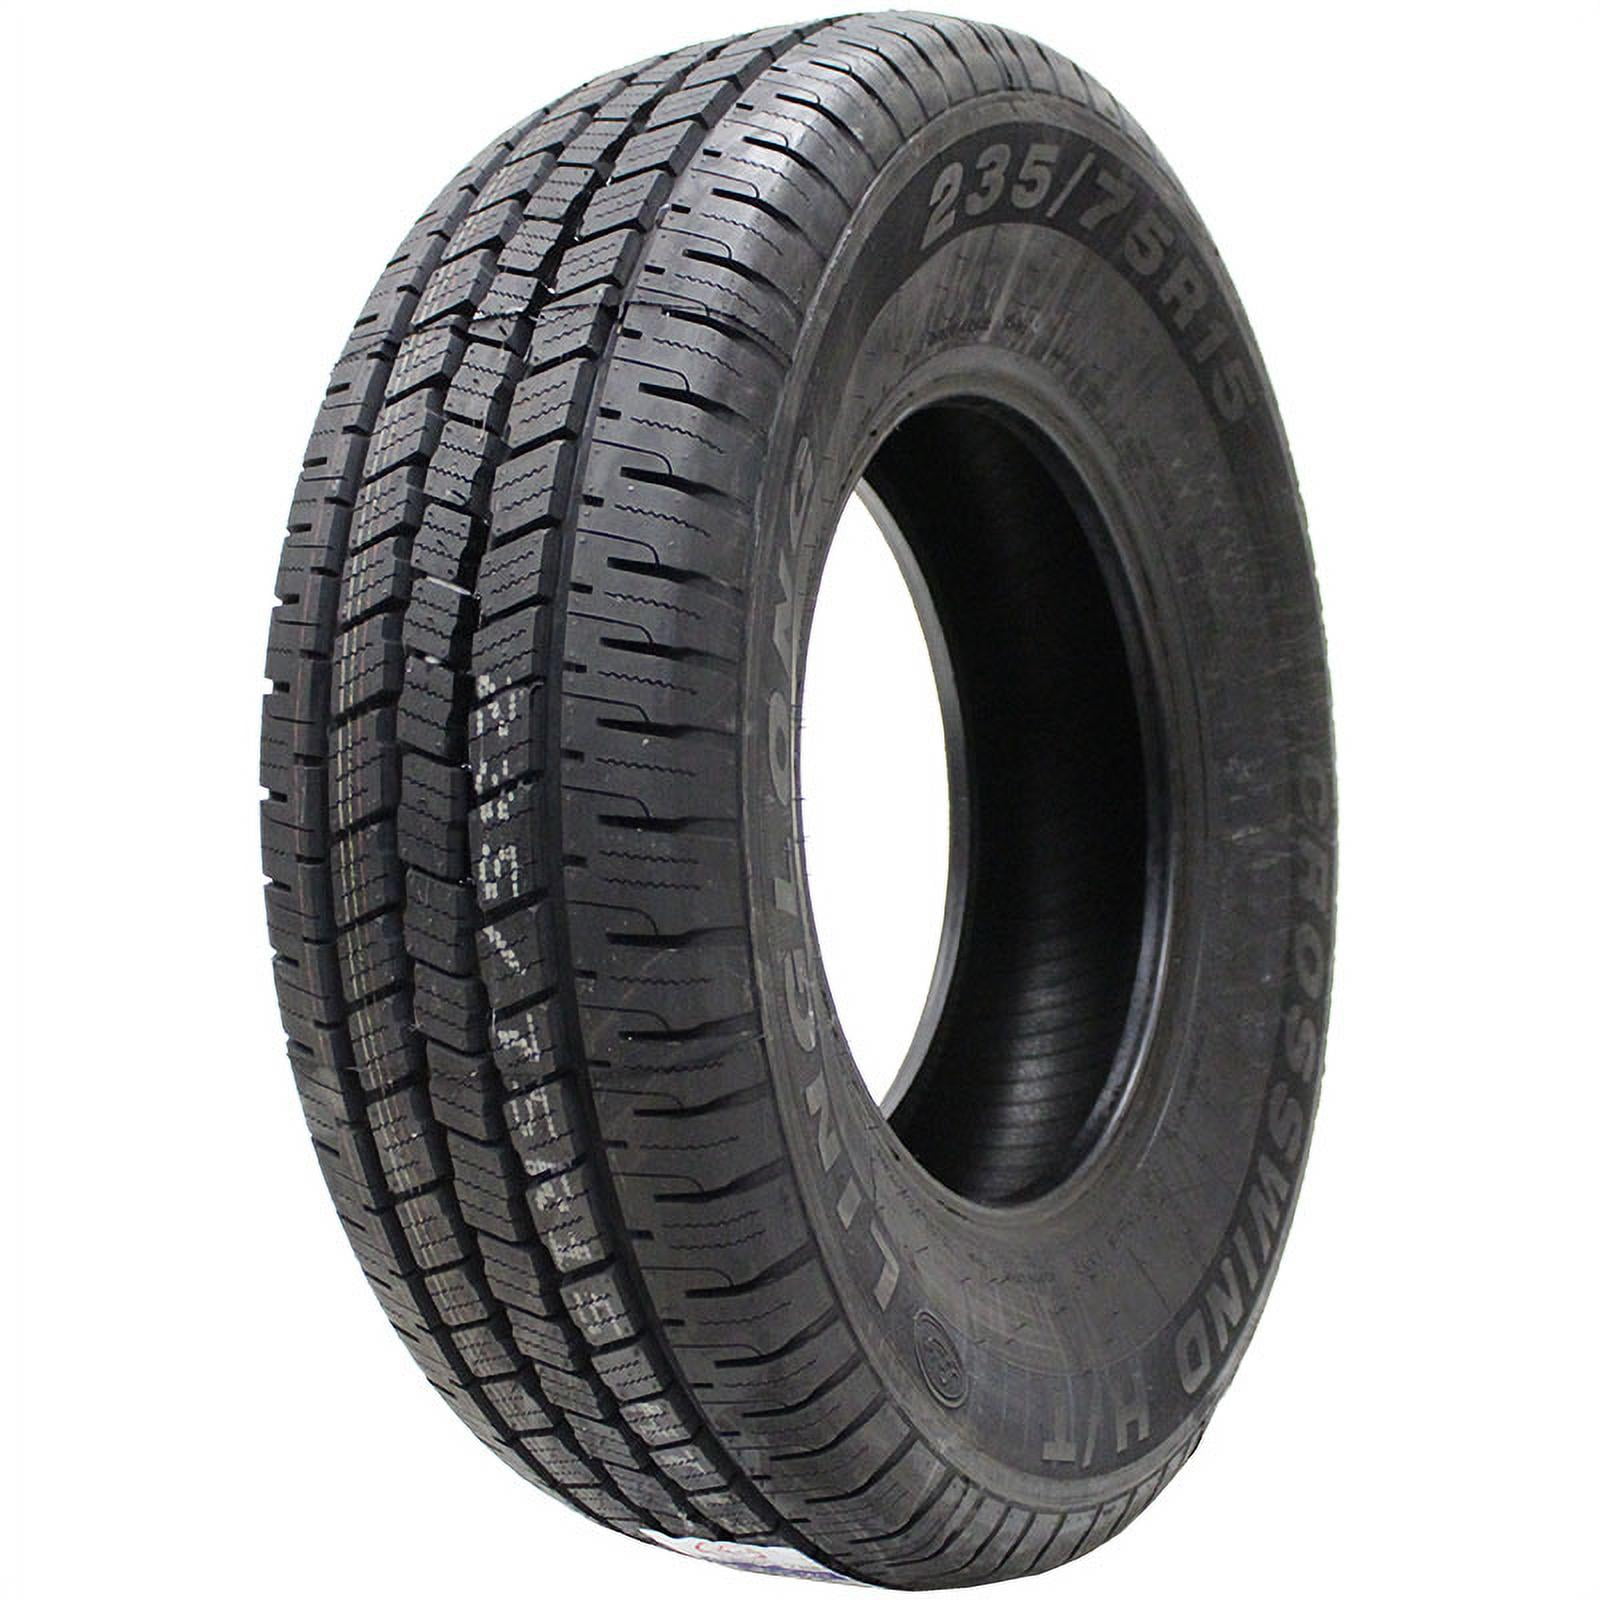 Season Radial Tire-245/70R16 107T Crosswind H/T All 